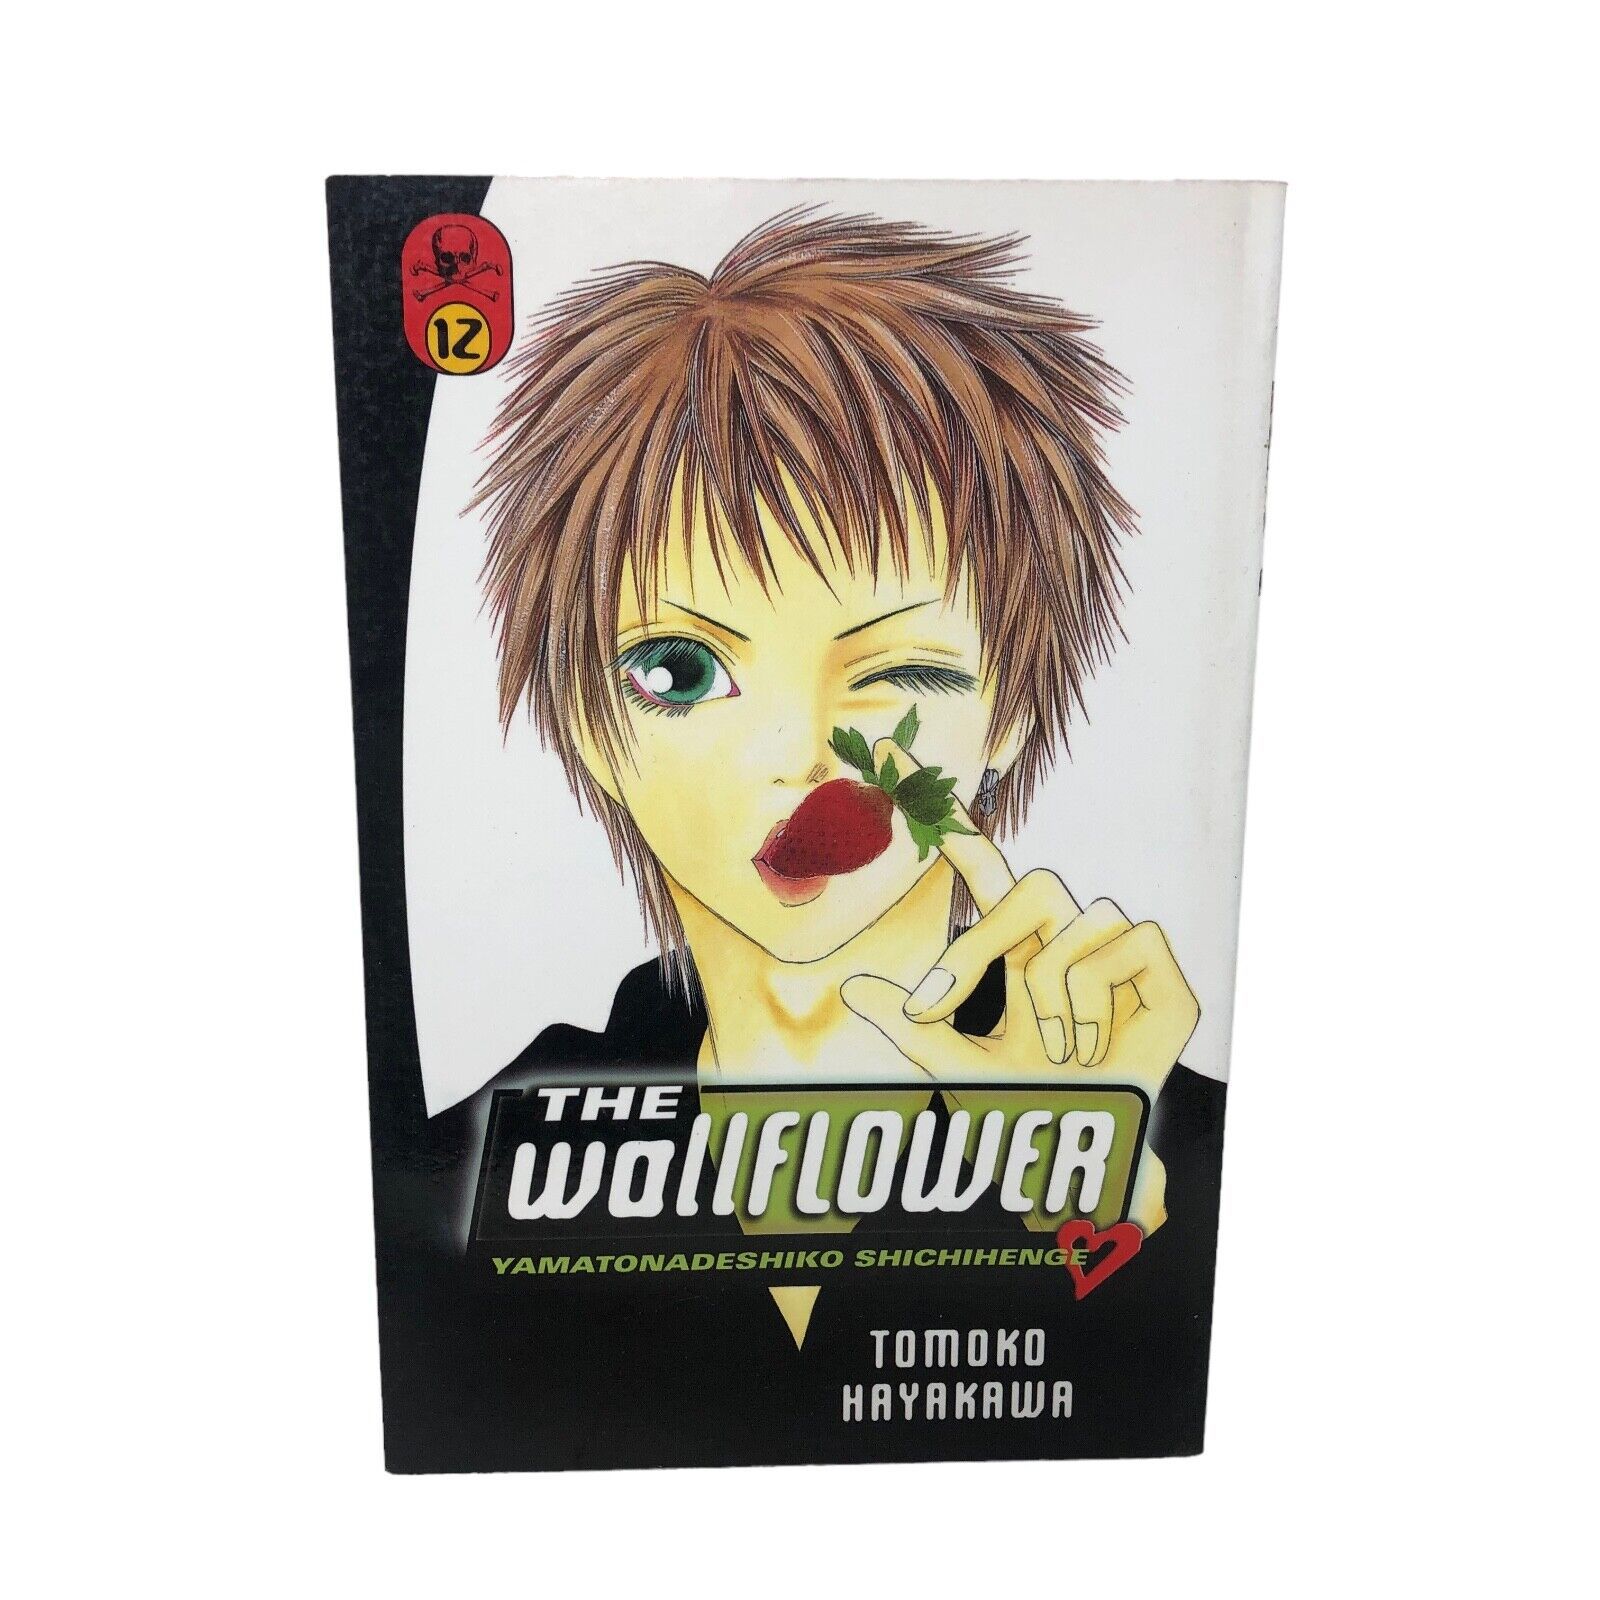 Primary image for The Wallflower vol. 12 by Tomoko Hayakawa Manga Book English